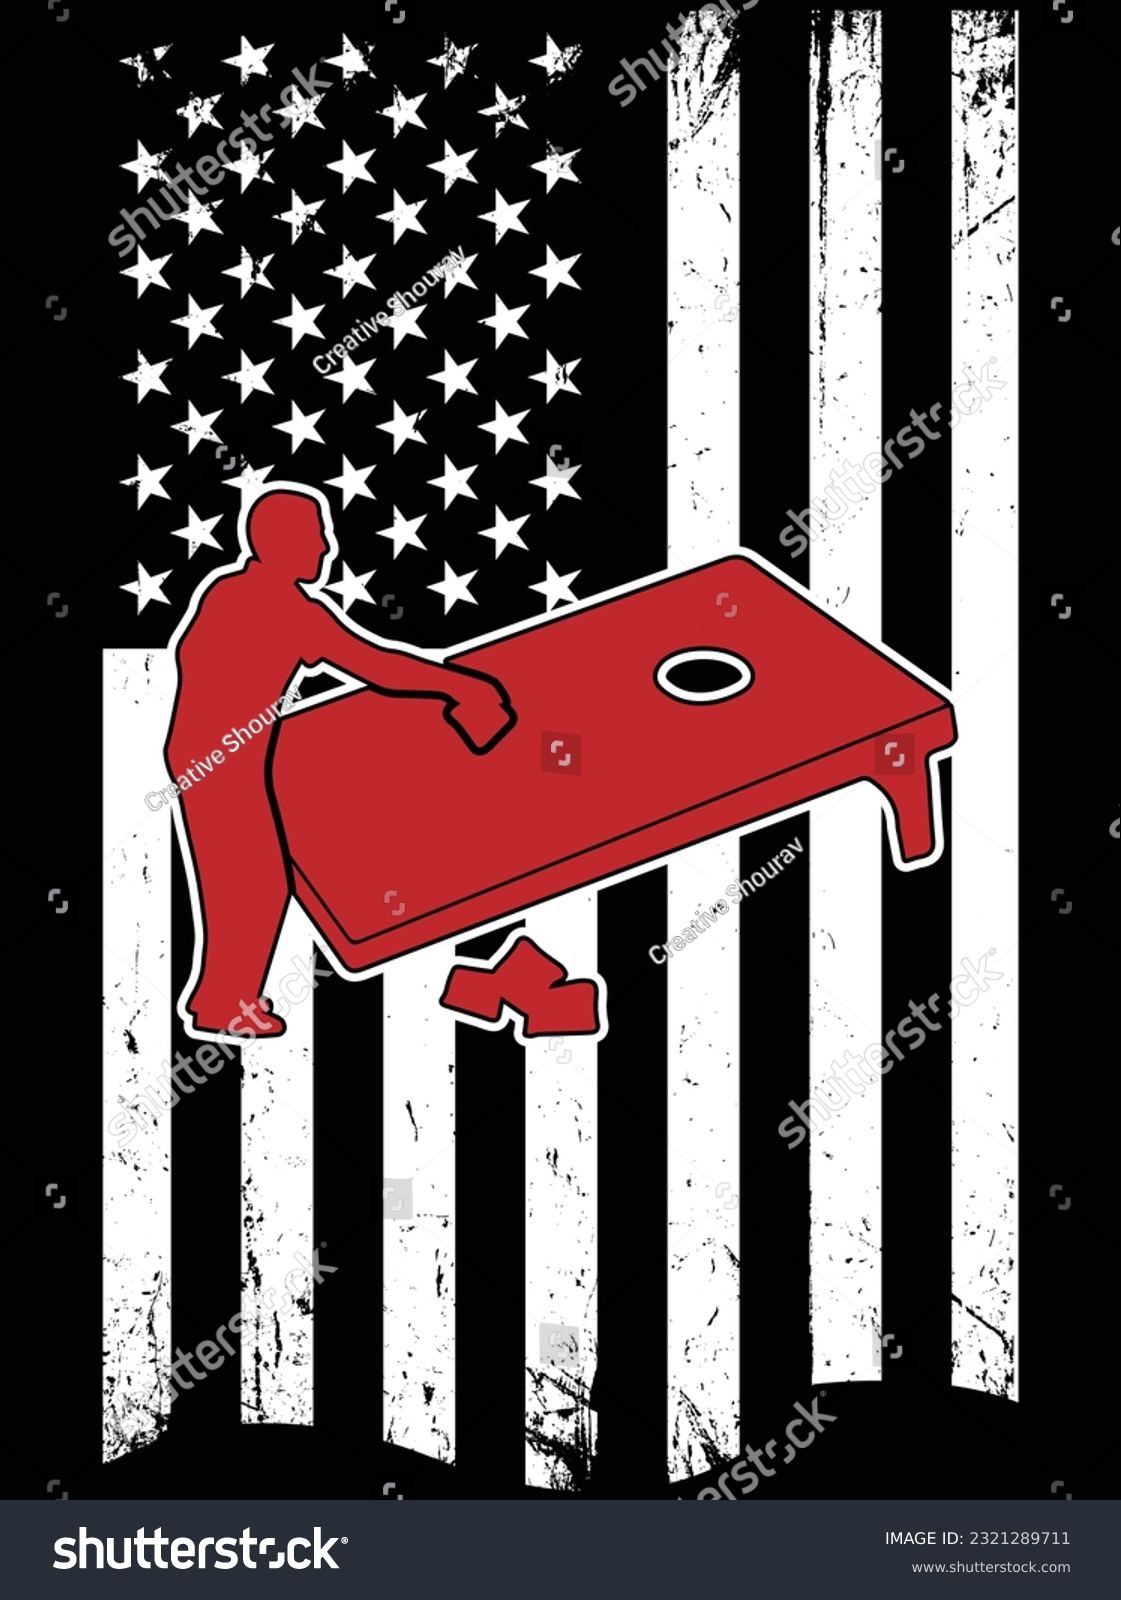 SVG of American flag cornhole vector art design, eps file. design file for t-shirt. SVG, EPS cuttable design file svg